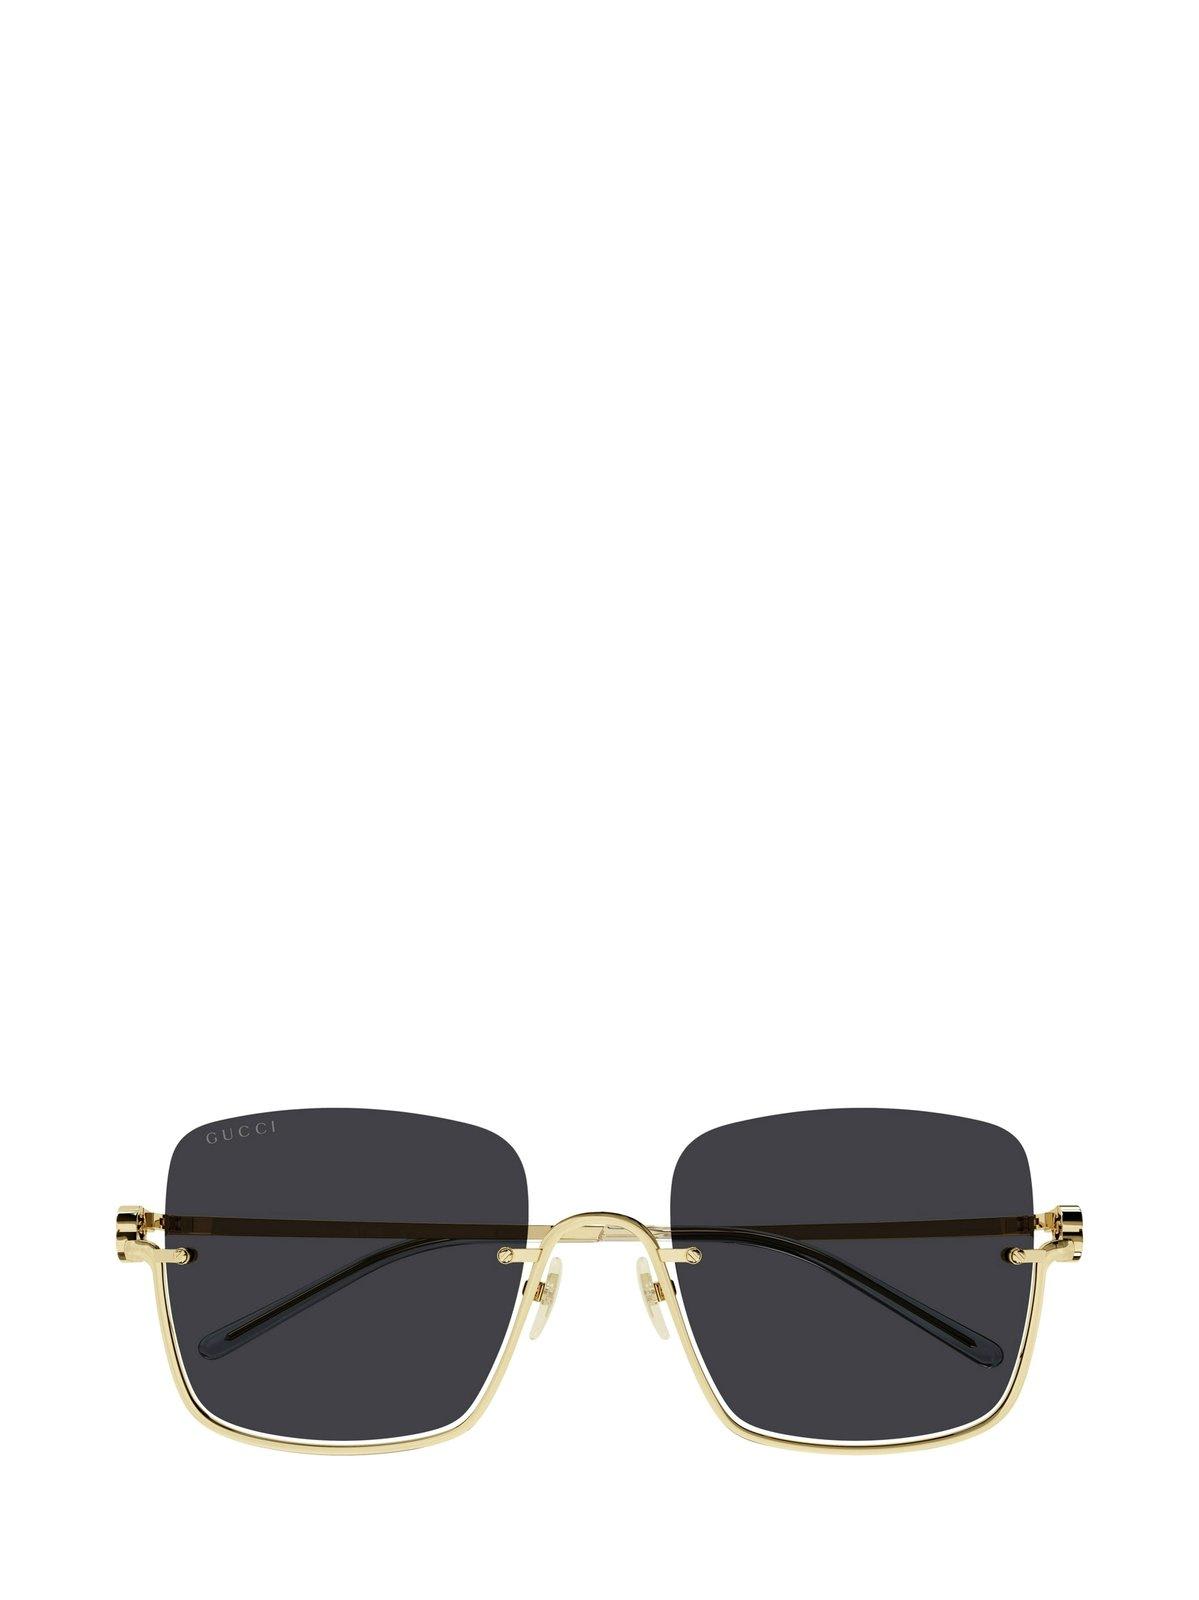 Gucci Square Frame Sunglasses Sunglasses In 001 Gold Gold Grey